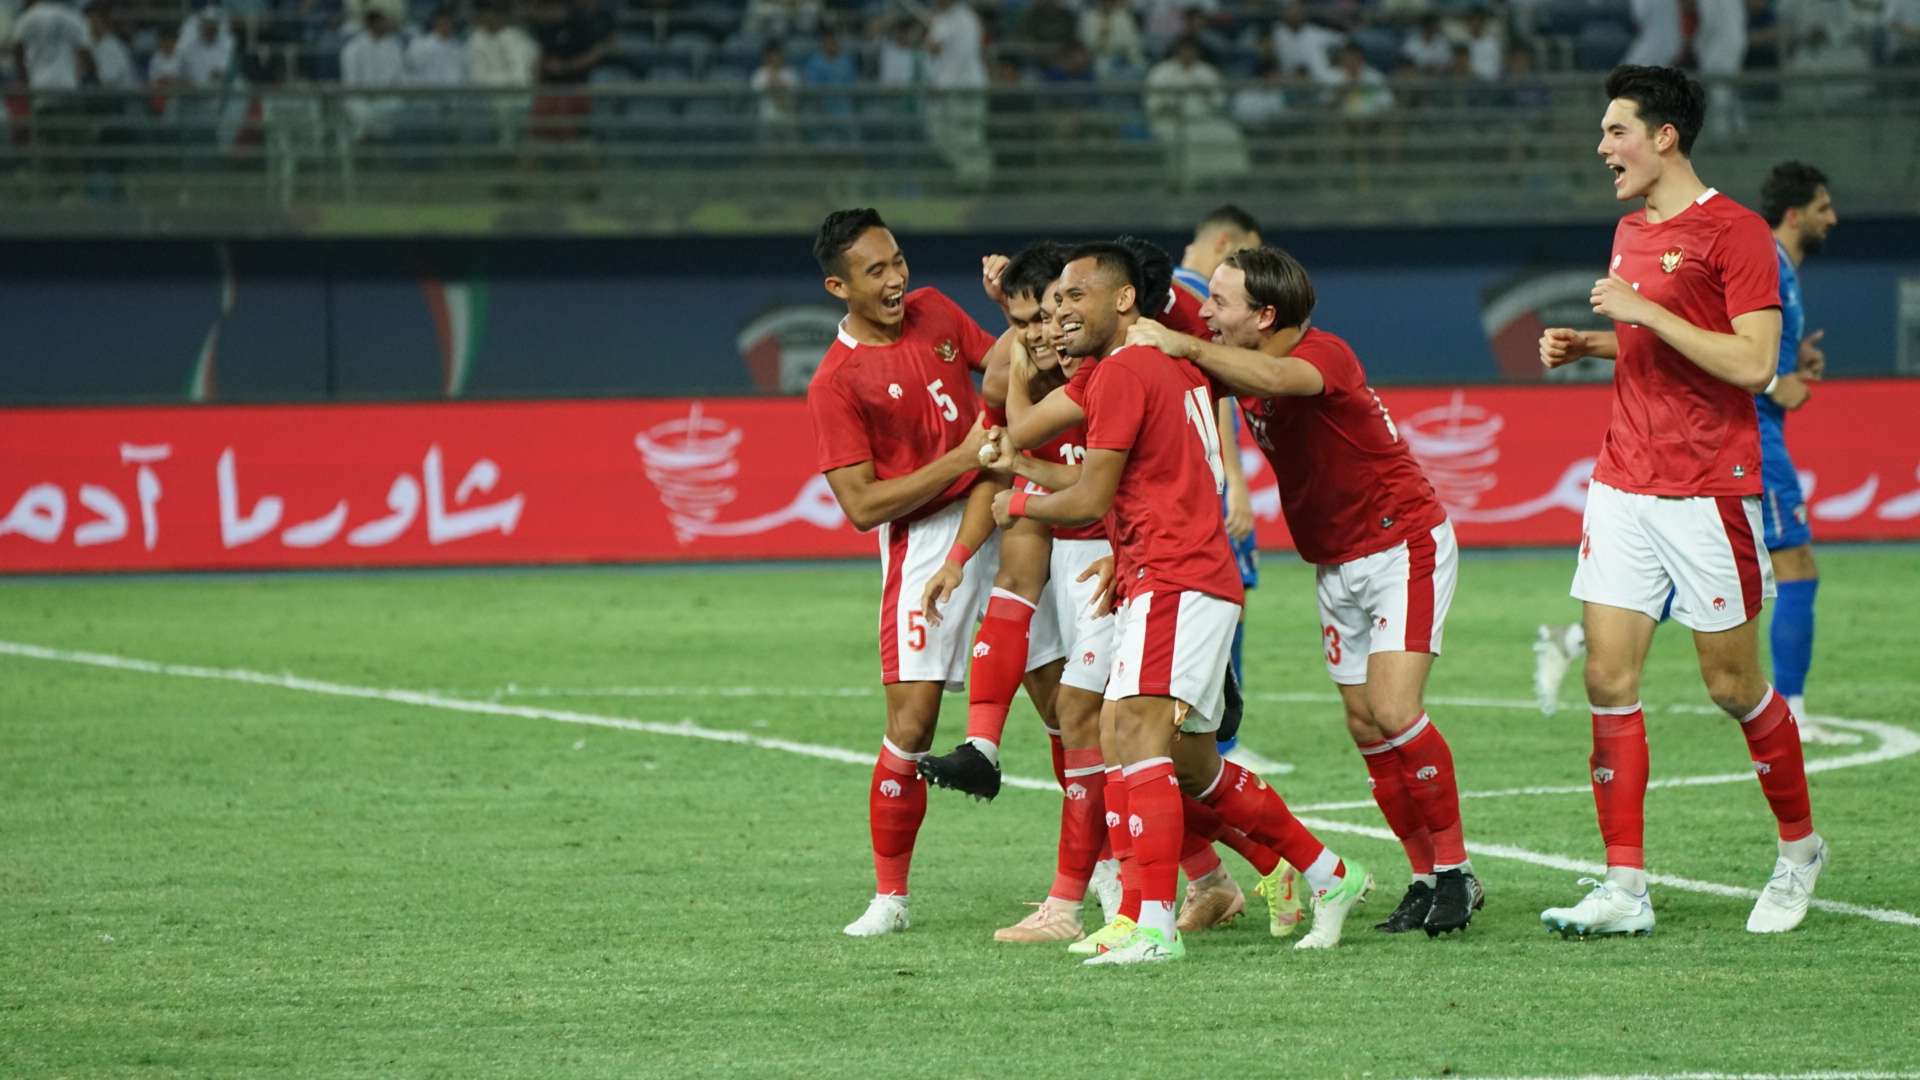 Jadwal FIFA Matchday Timnas di Kawasan ASEAN: Ada Banyak Pertandingan Seru!